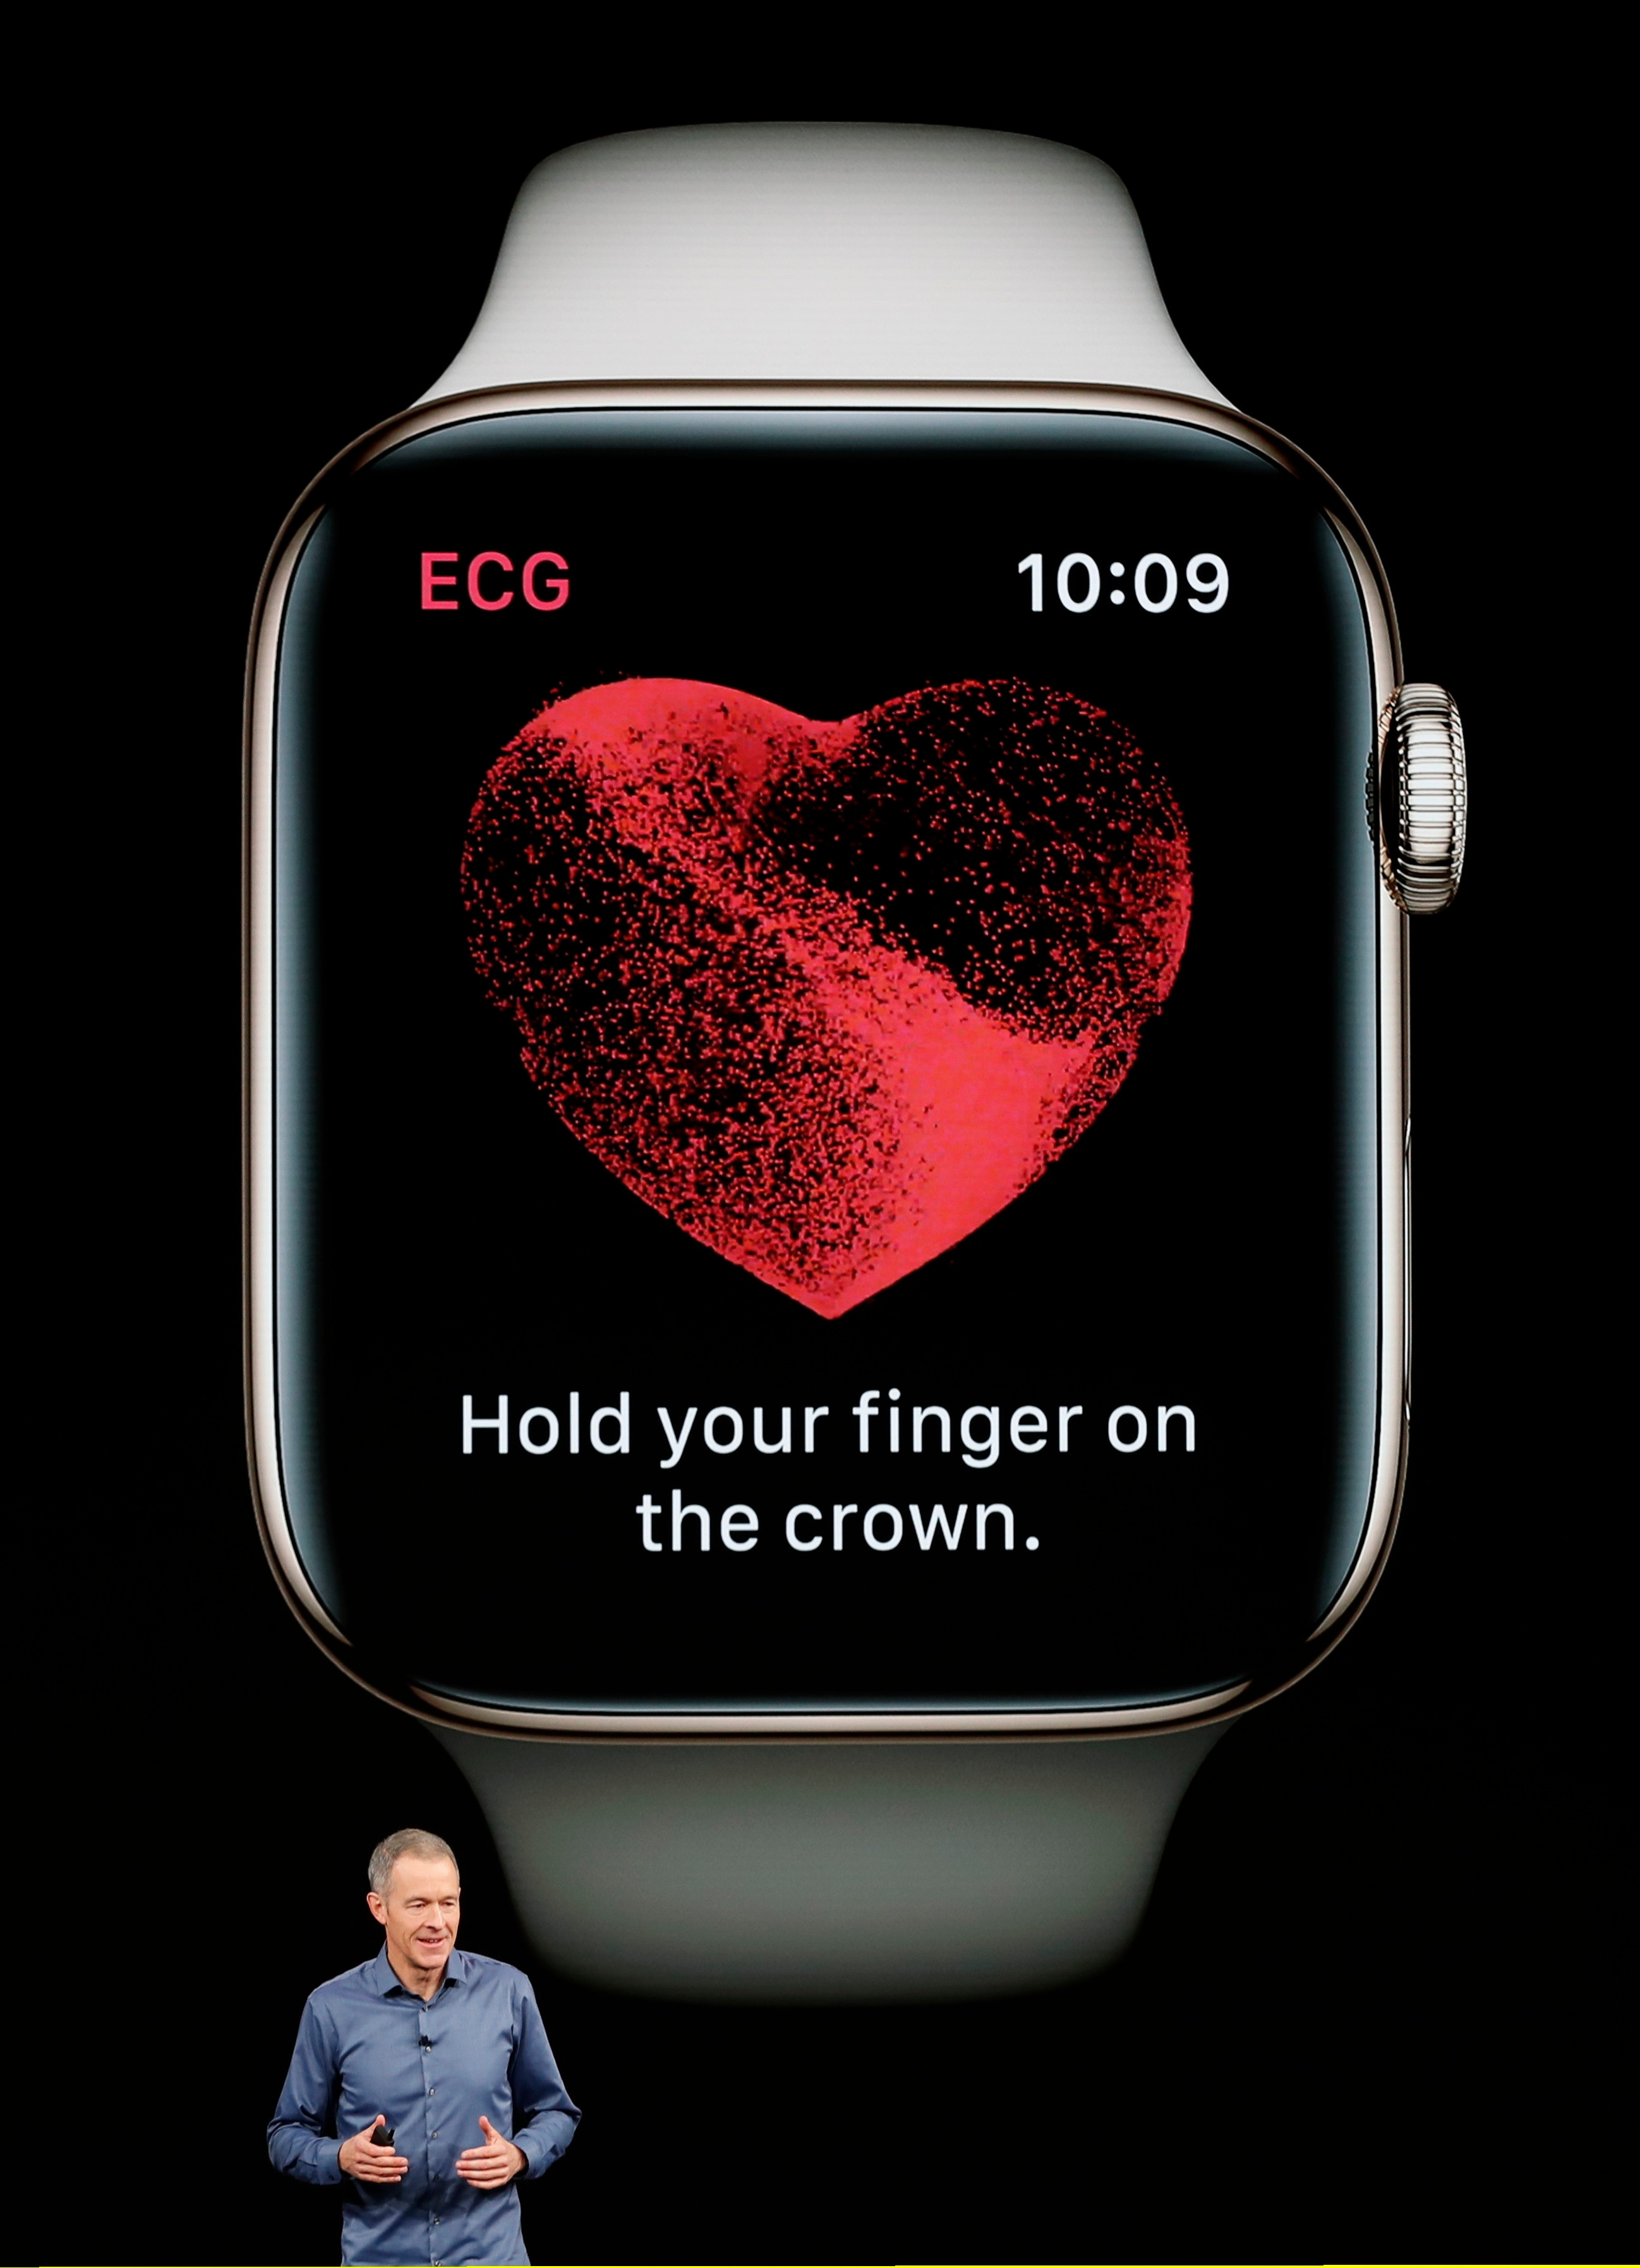  Kami mengharapkan versi baru dari Apple Watch untuk diresmikan juga